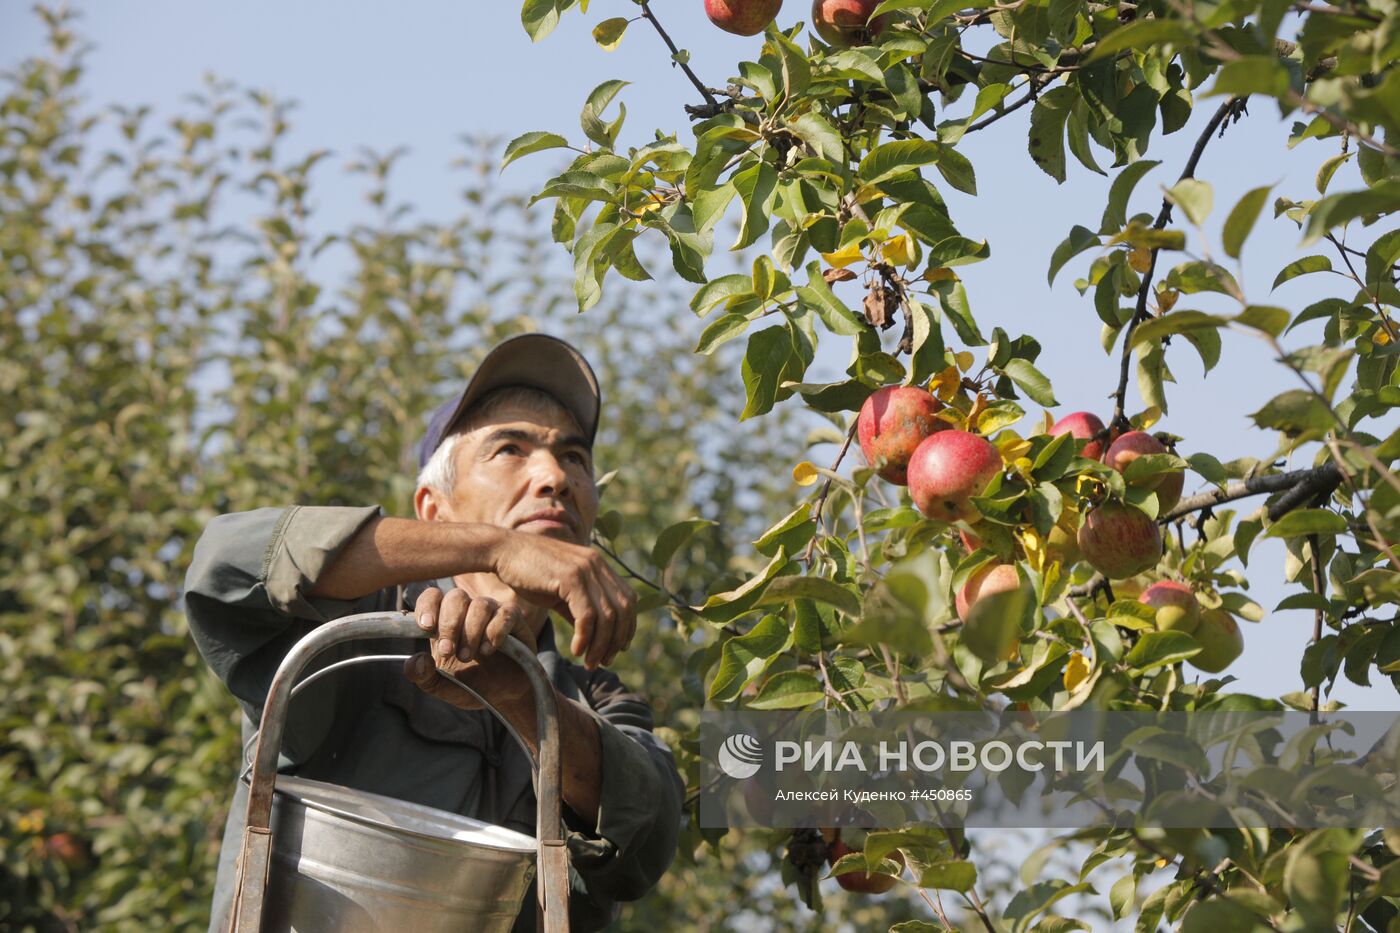 Сбор урожая яблок в ЗАО "Совхоз им. Ленина"